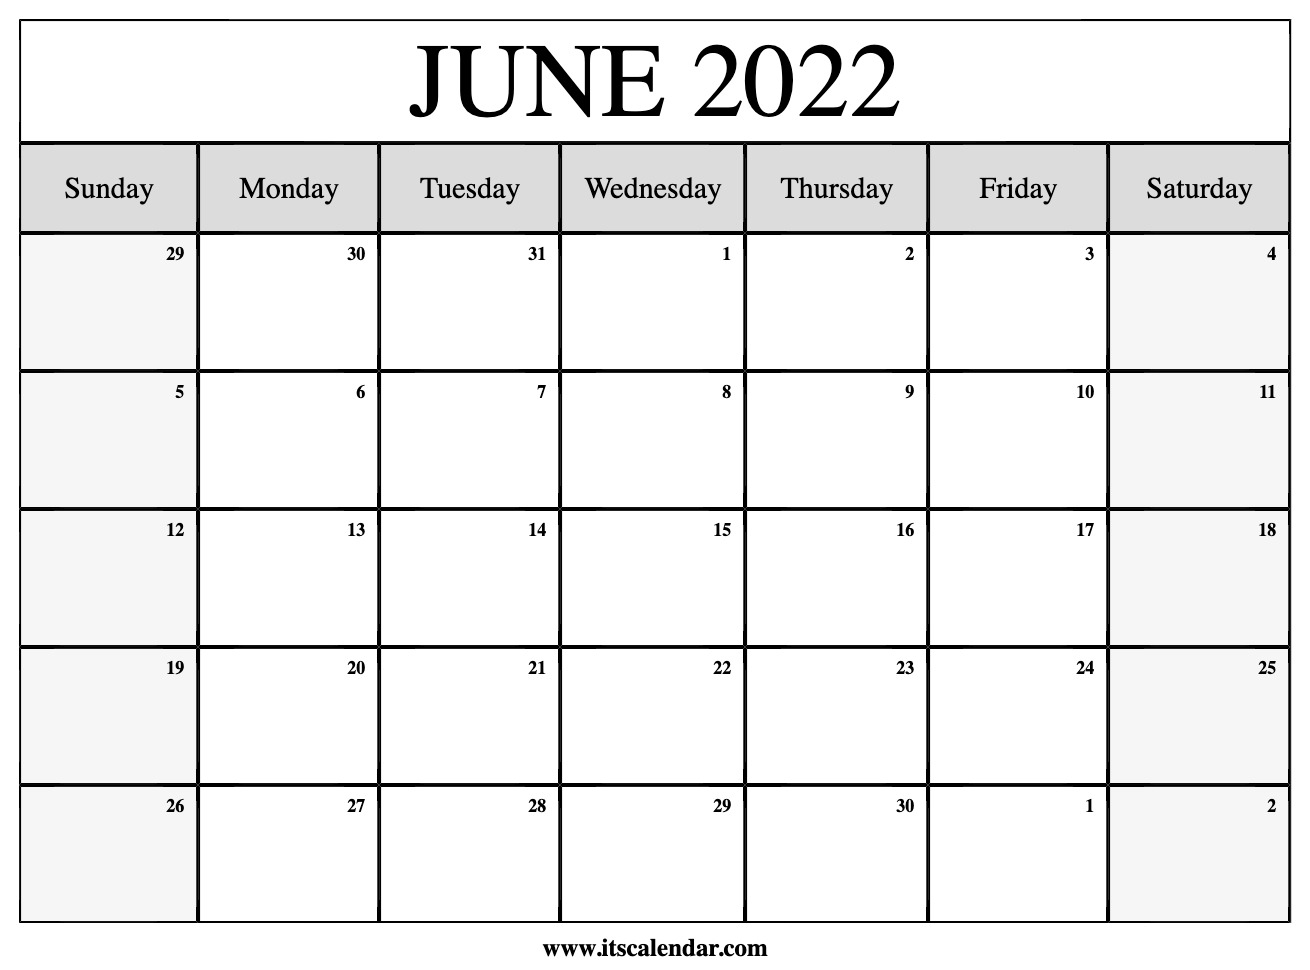 June 2022 Regents Schedule Free Printable June 2022 Calendar